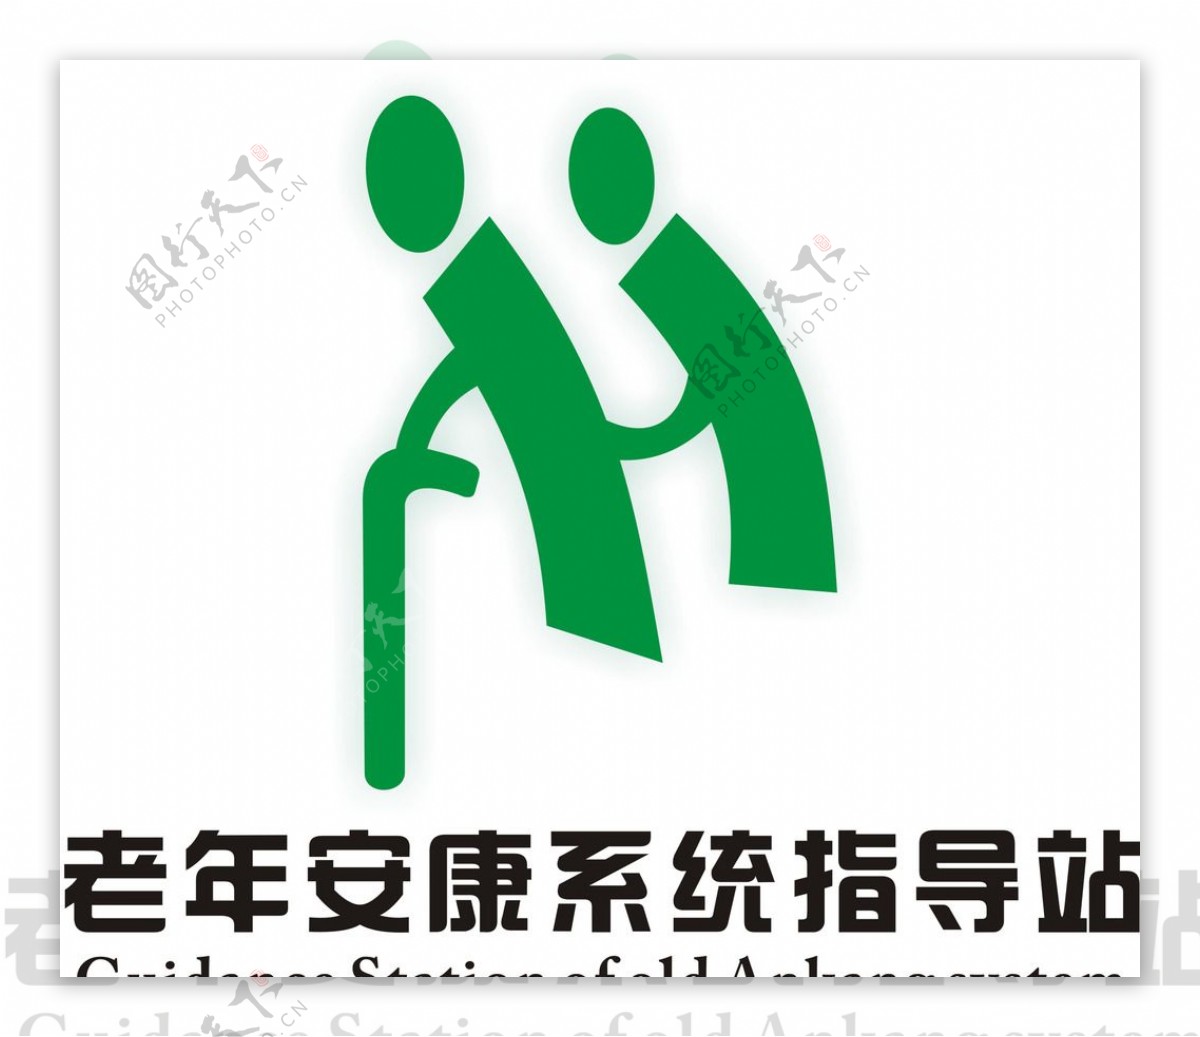 老年安康系统指导站logo设计图片